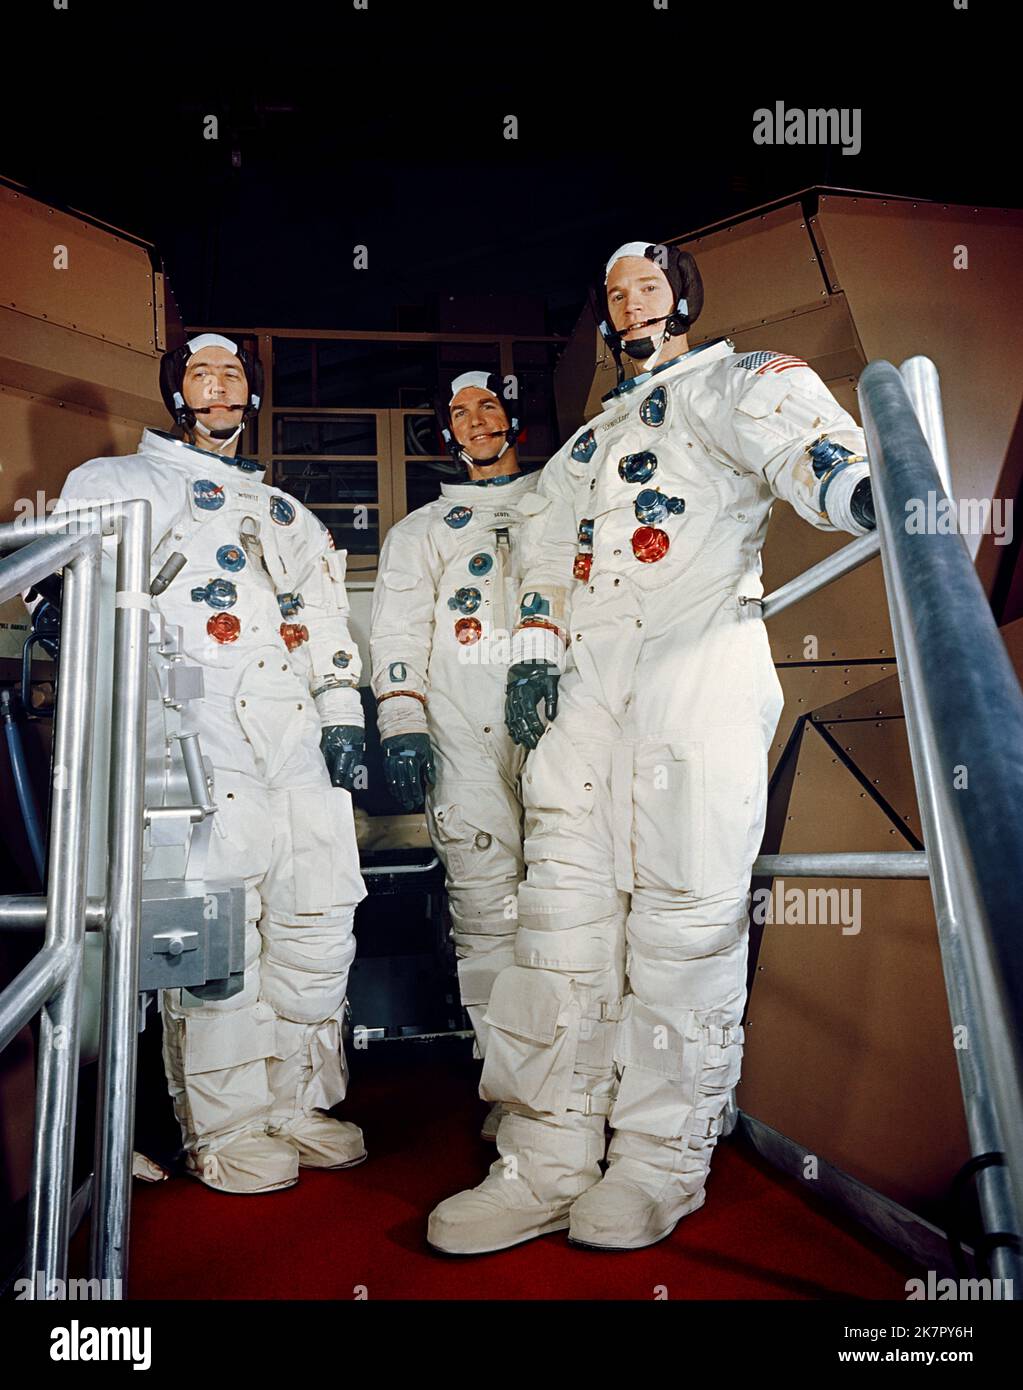 Cape Canaveral, Usa. 18. Oktober 2022. NASA Apollo 9-Astronauten der Hauptmannschaft, von links nach rechts, James McDivitt, David Scott und Russell Schweickart posieren in Raumanzügen während des Apollo Mission Simulator-Trainings im Kennedy Space Center, 17. Februar 1969 in Cape Canaveral, Florida. McDivitt kommandierte die erste Gemini-Weltraummission und kommandierte Apollo 9 während des ersten mitbemundeten Orbitalflugs eines Mondmoduls, der am 15. Oktober 2022 im Alter von 93 Jahren starb. Quelle: NASA/NASA/Alamy Live News Stockfoto